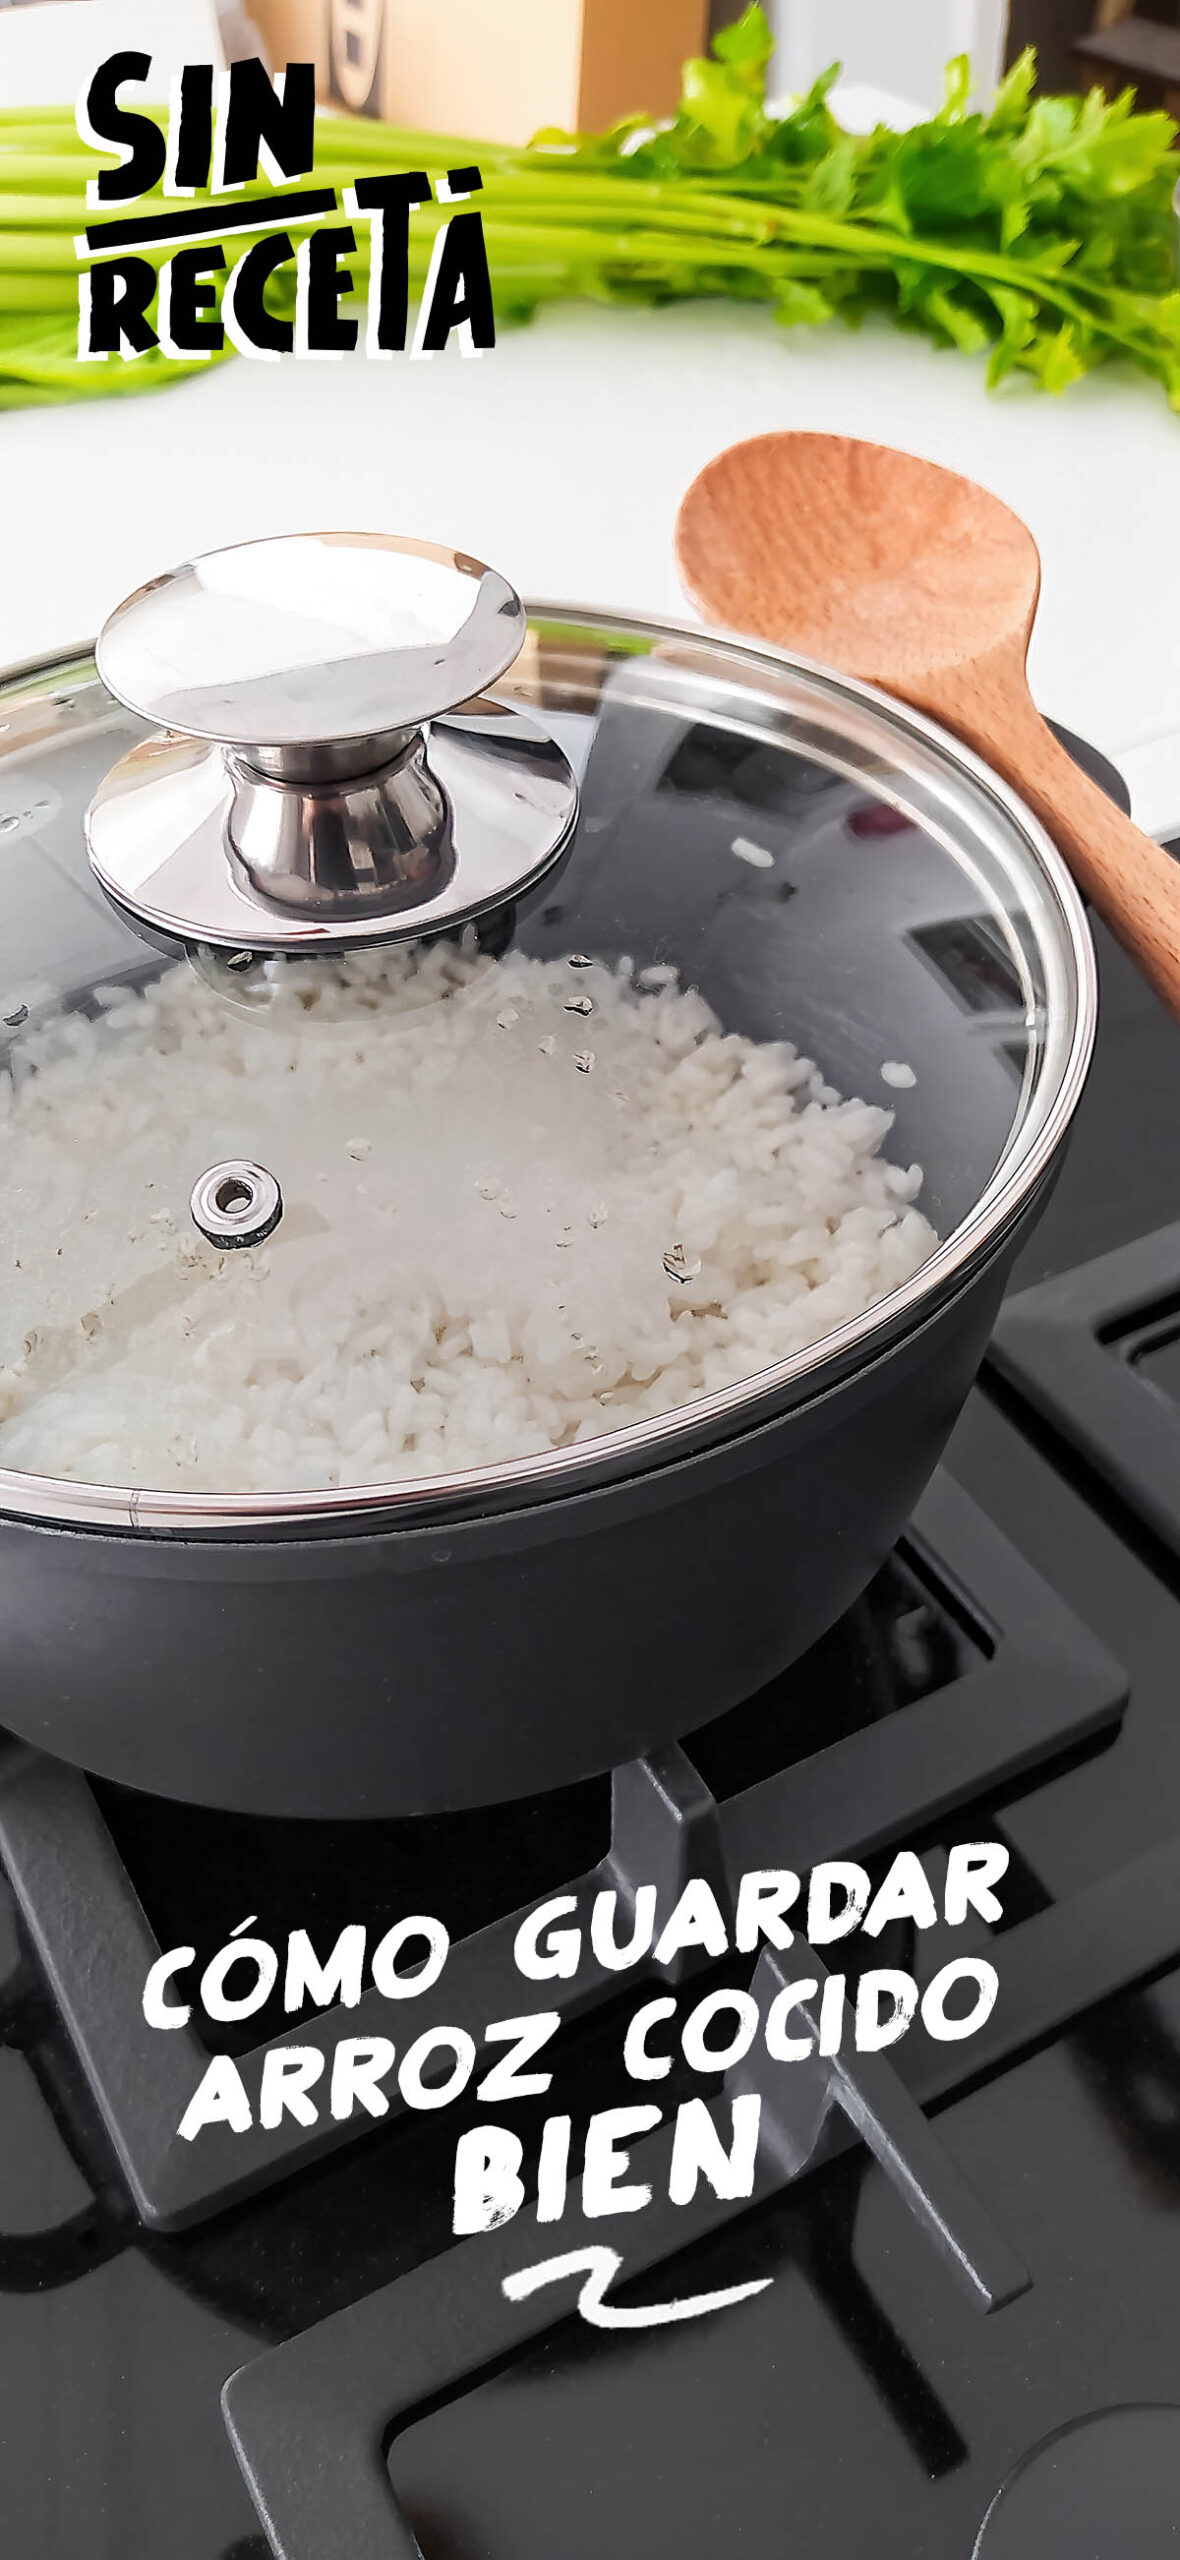 ¿Cómo mantener el arroz cocido en la nevera?